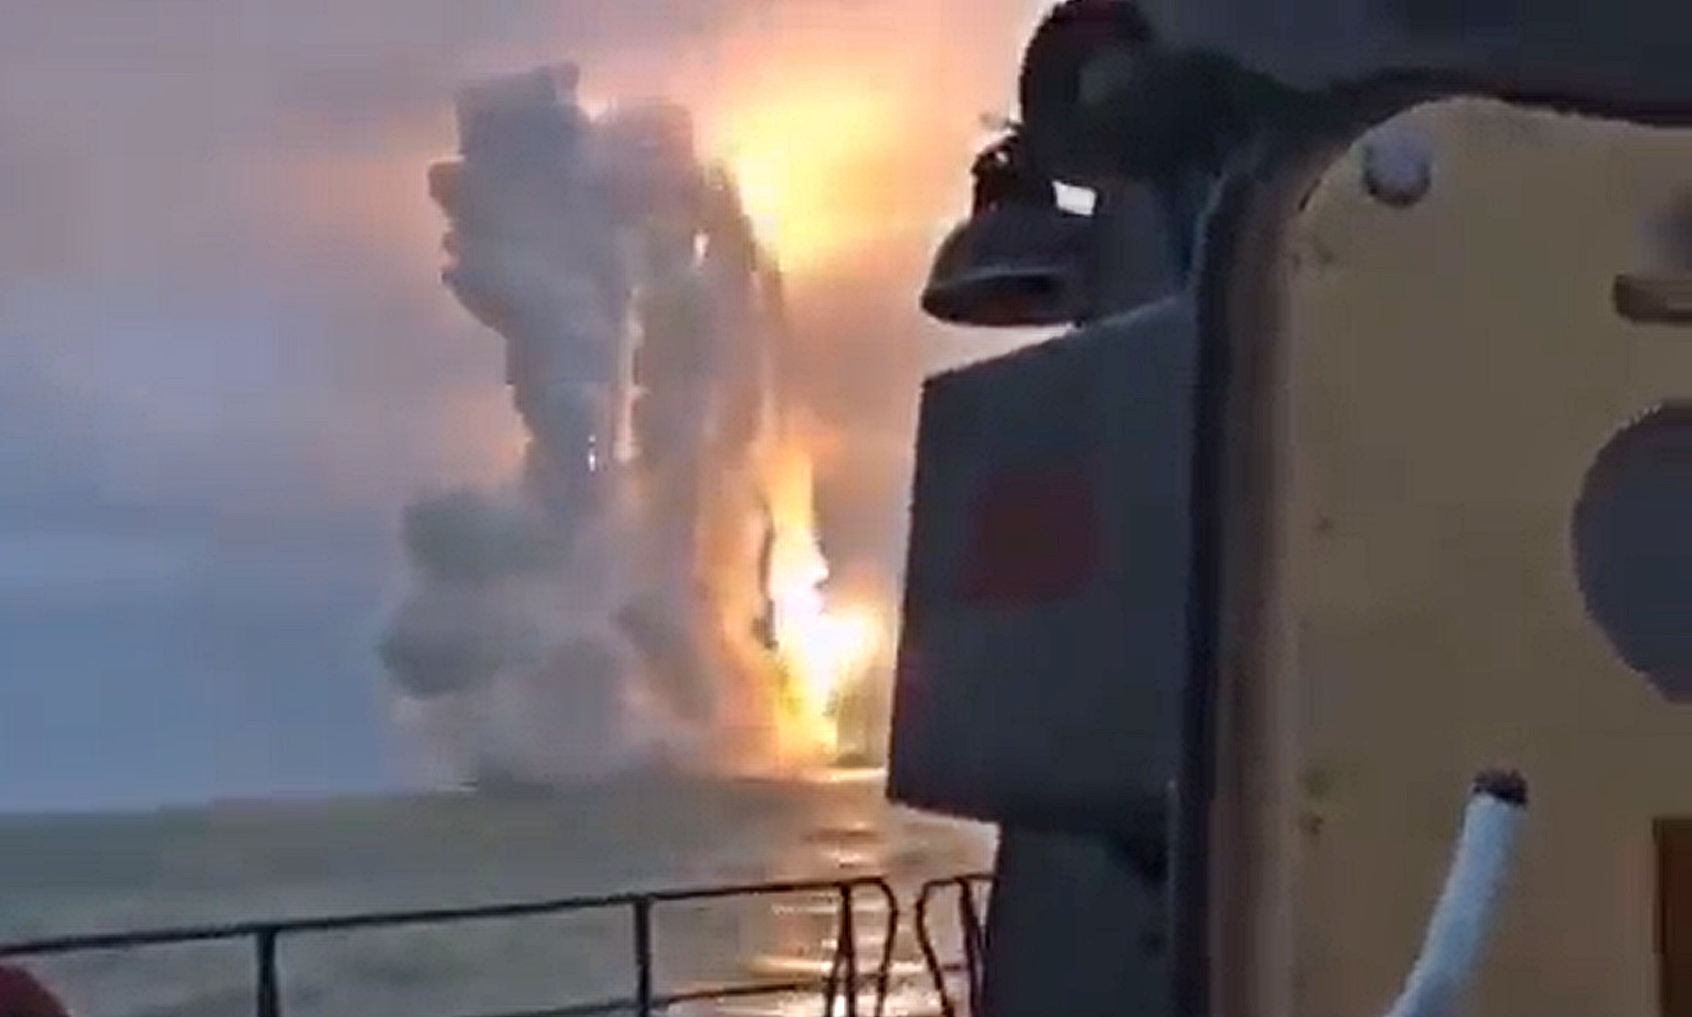 안톤 게라센코 우크라이나 내무부 장관 보좌관은 러시아 흑해 함대 수상함에서 우크라이나 쪽으로 칼리브르 순항미사일이 발사되는 모습이 관측됐다고 전했다. 2023.2.18 게라센코 트위터